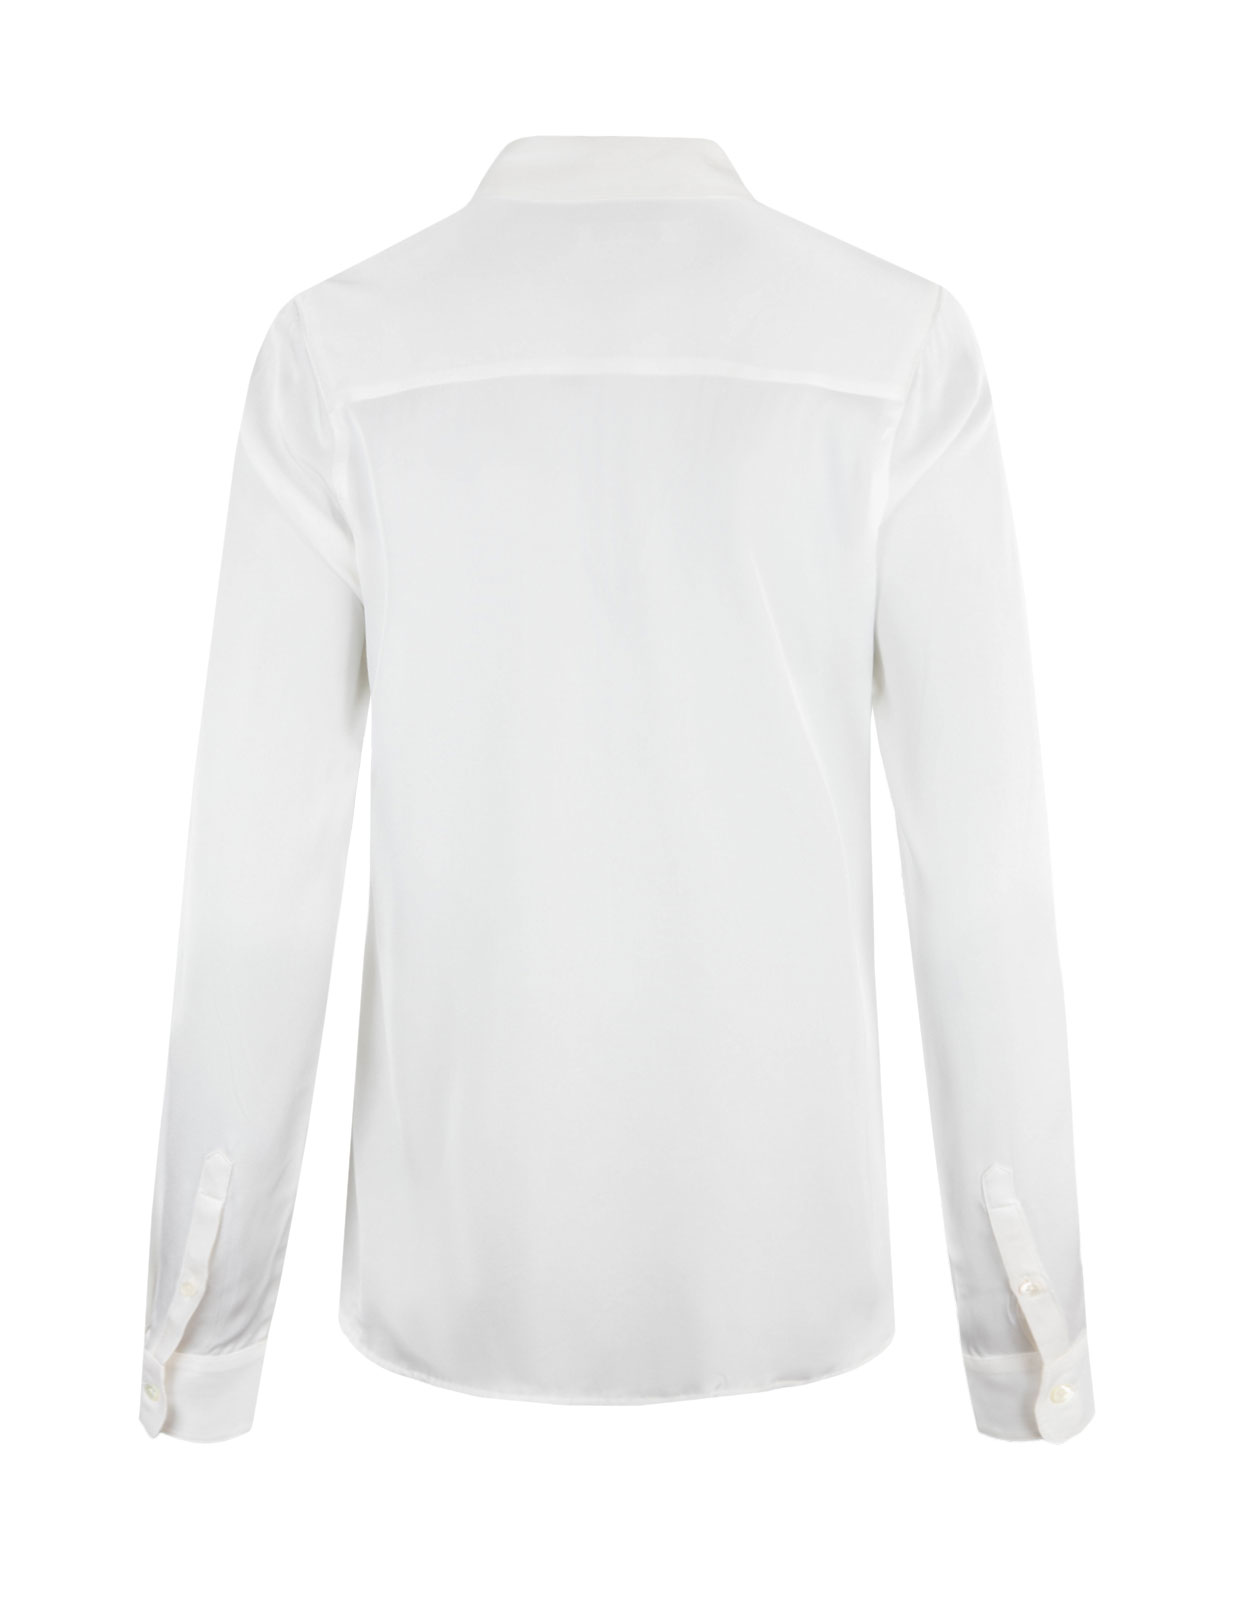 Susan Silk Shirt Offwhite Stl 44